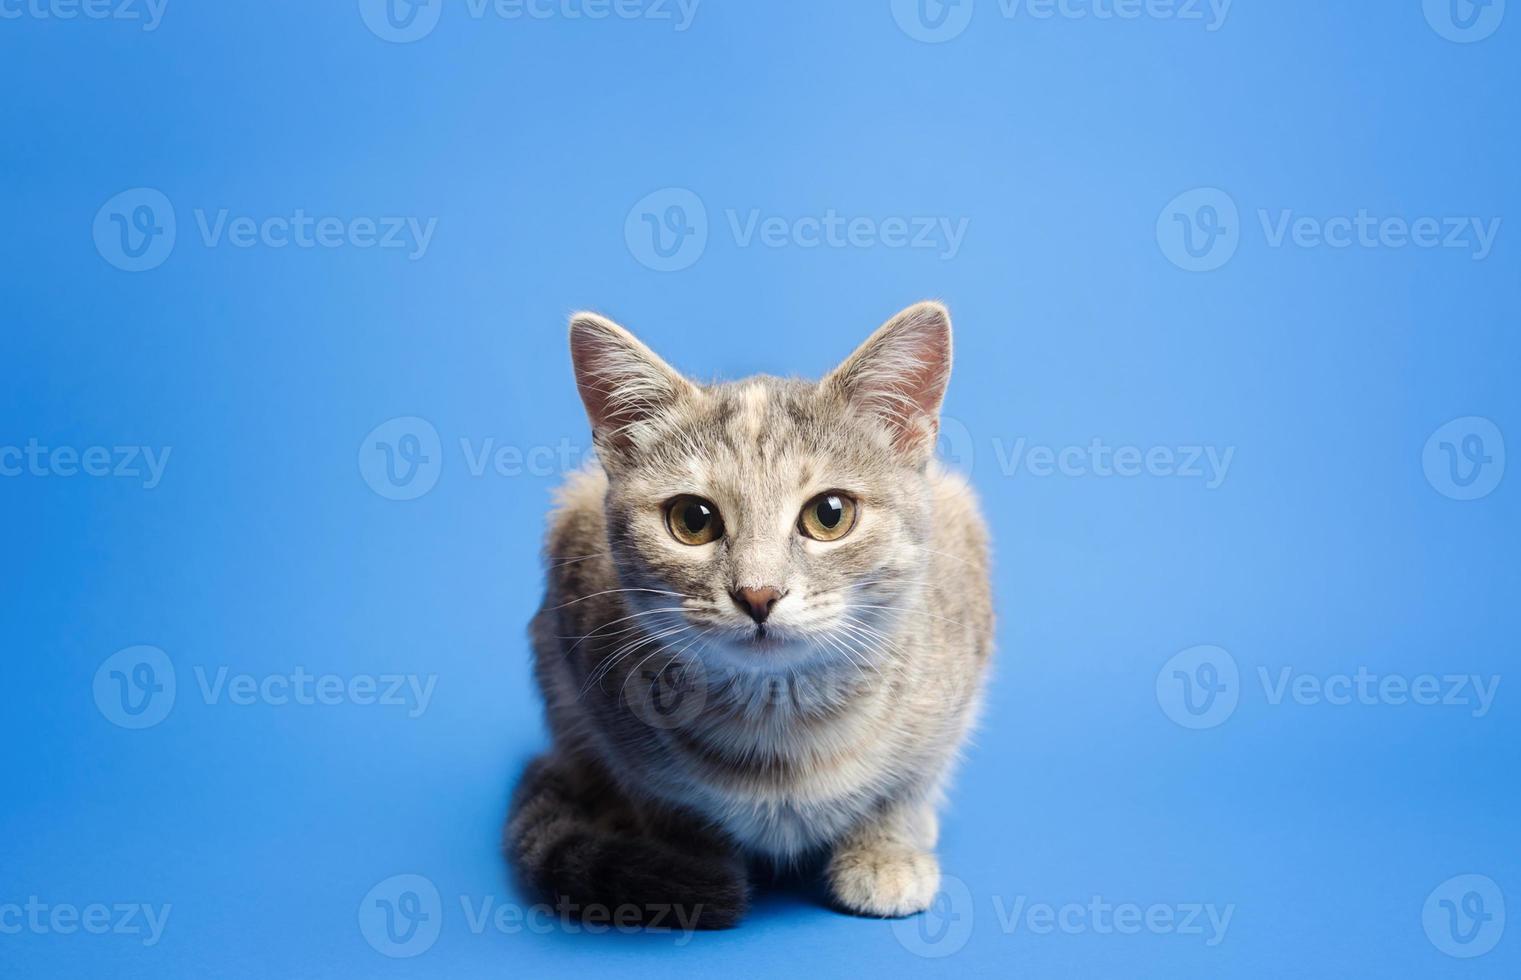 gato malhado bonito está olhando curiosamente para a câmera em um fundo azul. lindo gatinho engraçado. quebrando a quarta parede. curiosidade e atenção, gatinho brincalhão. retrato, sentado posando. foto